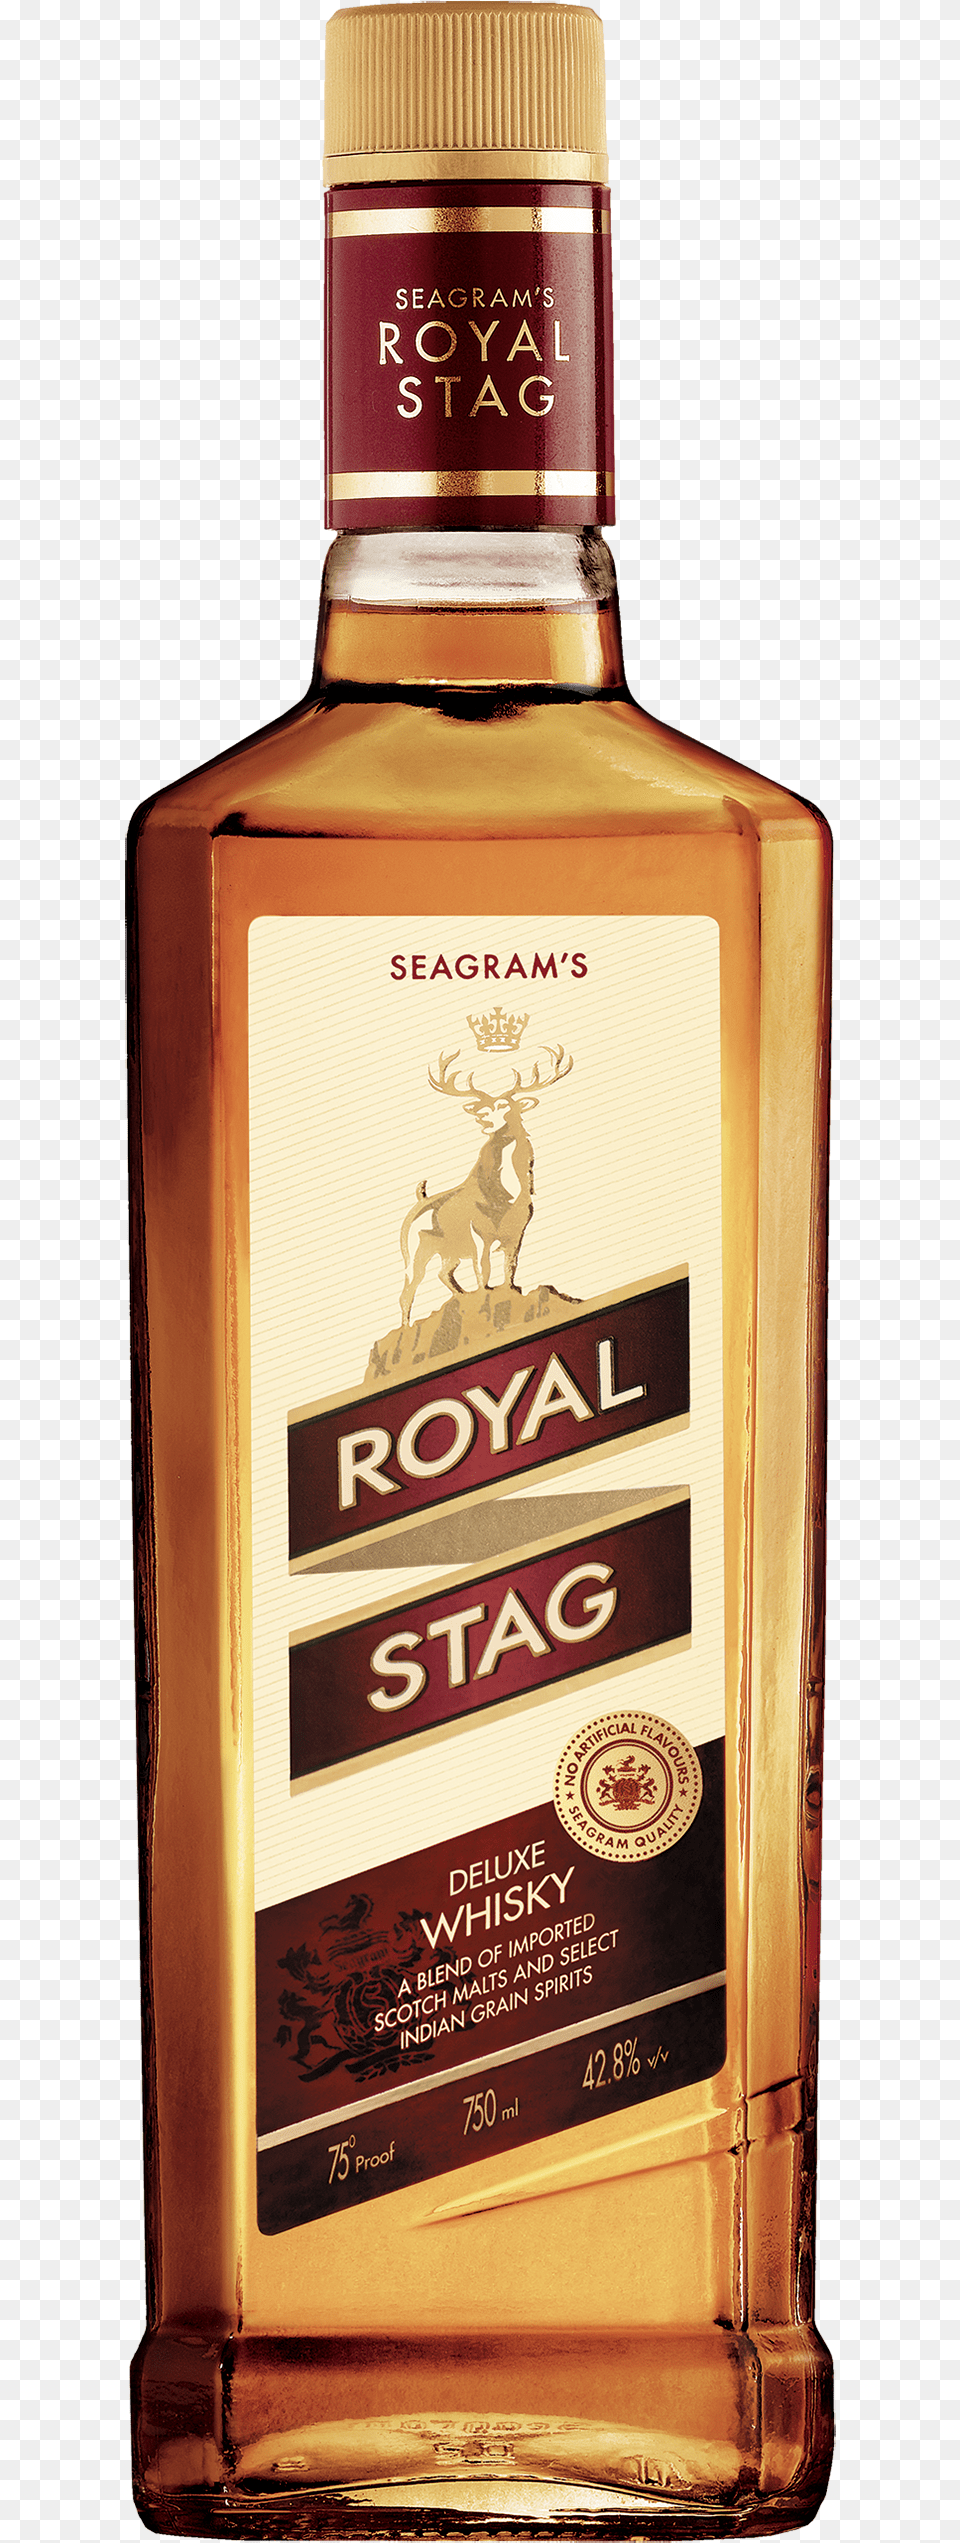 Royal Vector Deer Royal Stag Images Download, Alcohol, Beverage, Liquor, Bottle Png